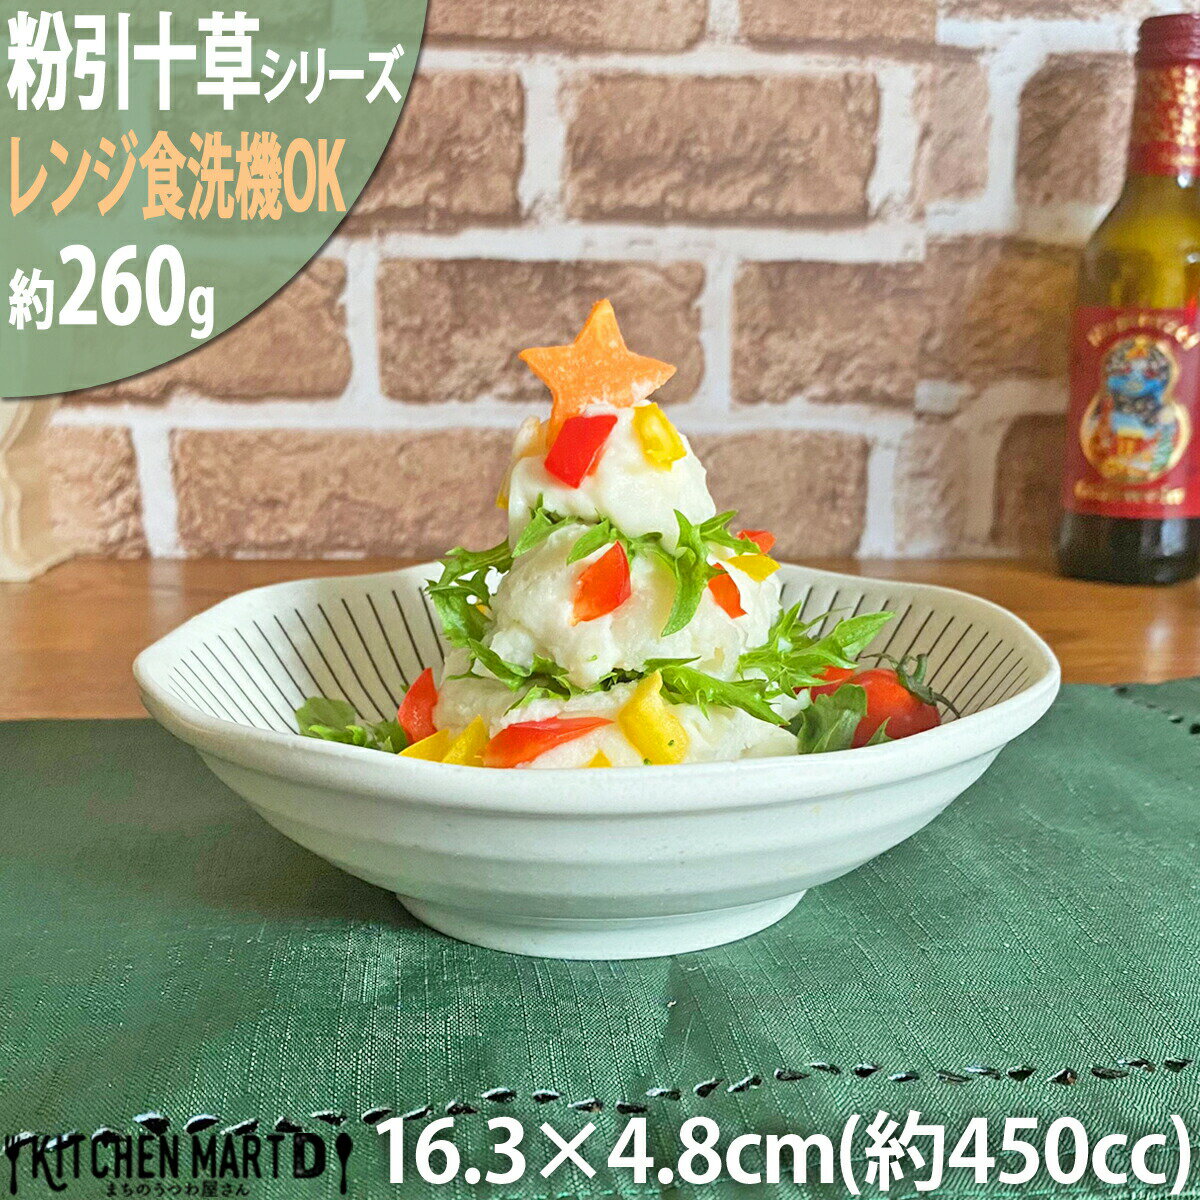 粉引十草 5.0浅鉢 16.3×4.8cm 丸 鉢 美